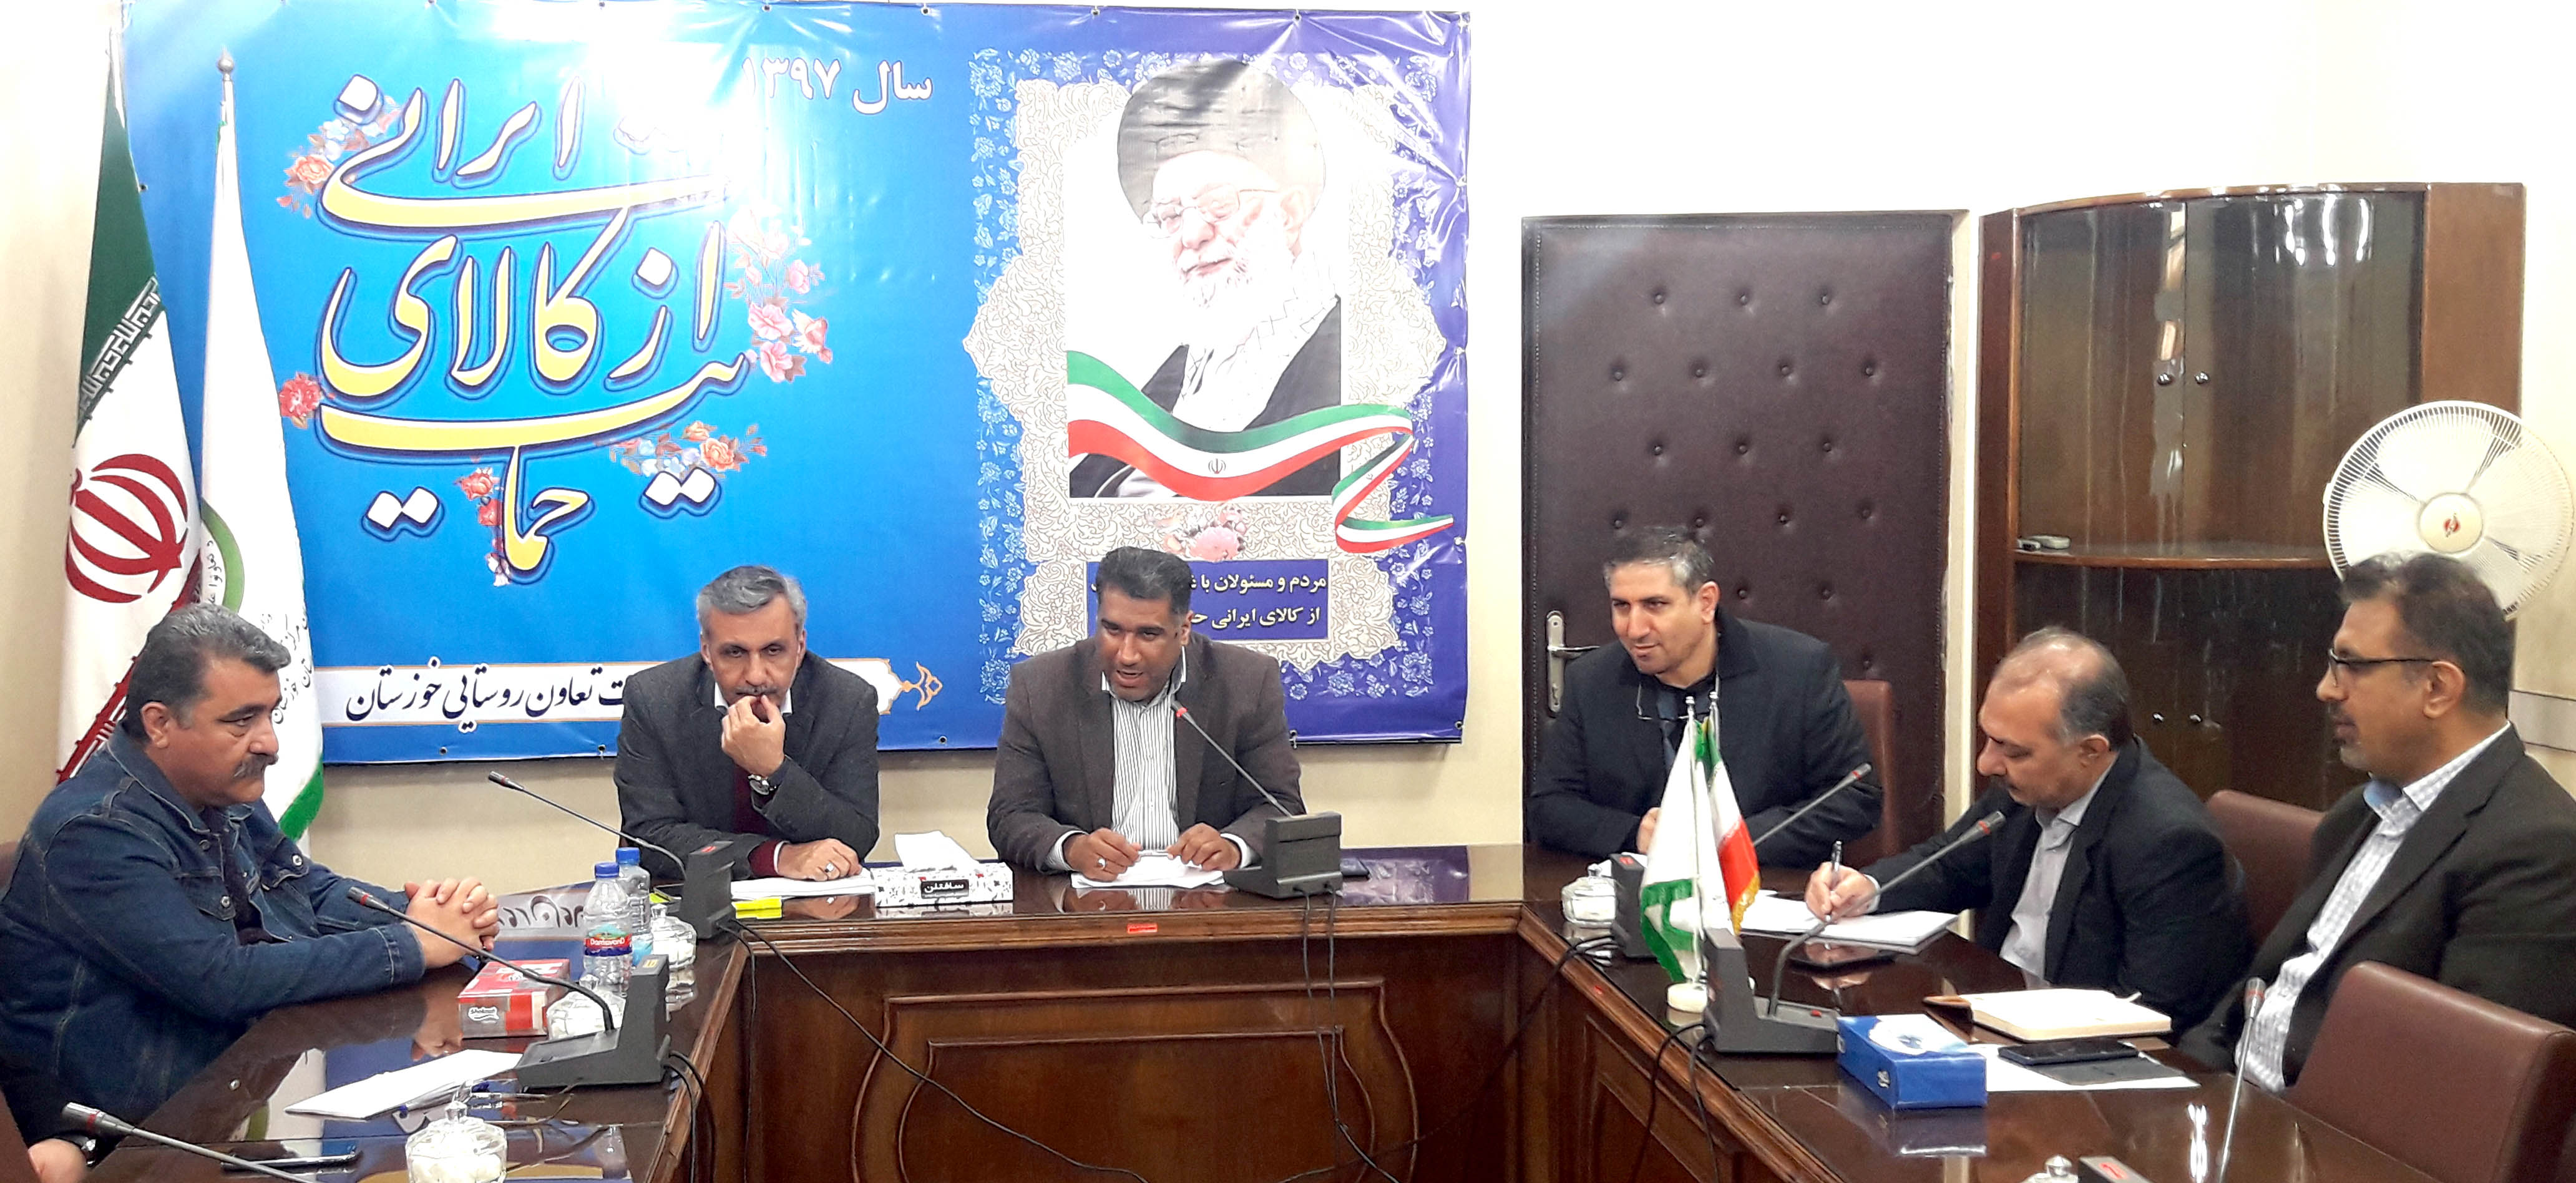 برگزاری جلسه سرمایه گذاری و مشارکت بخش خصوصی با تعاونی های تولید برای کشت گوجه فرنگی در خوزستان